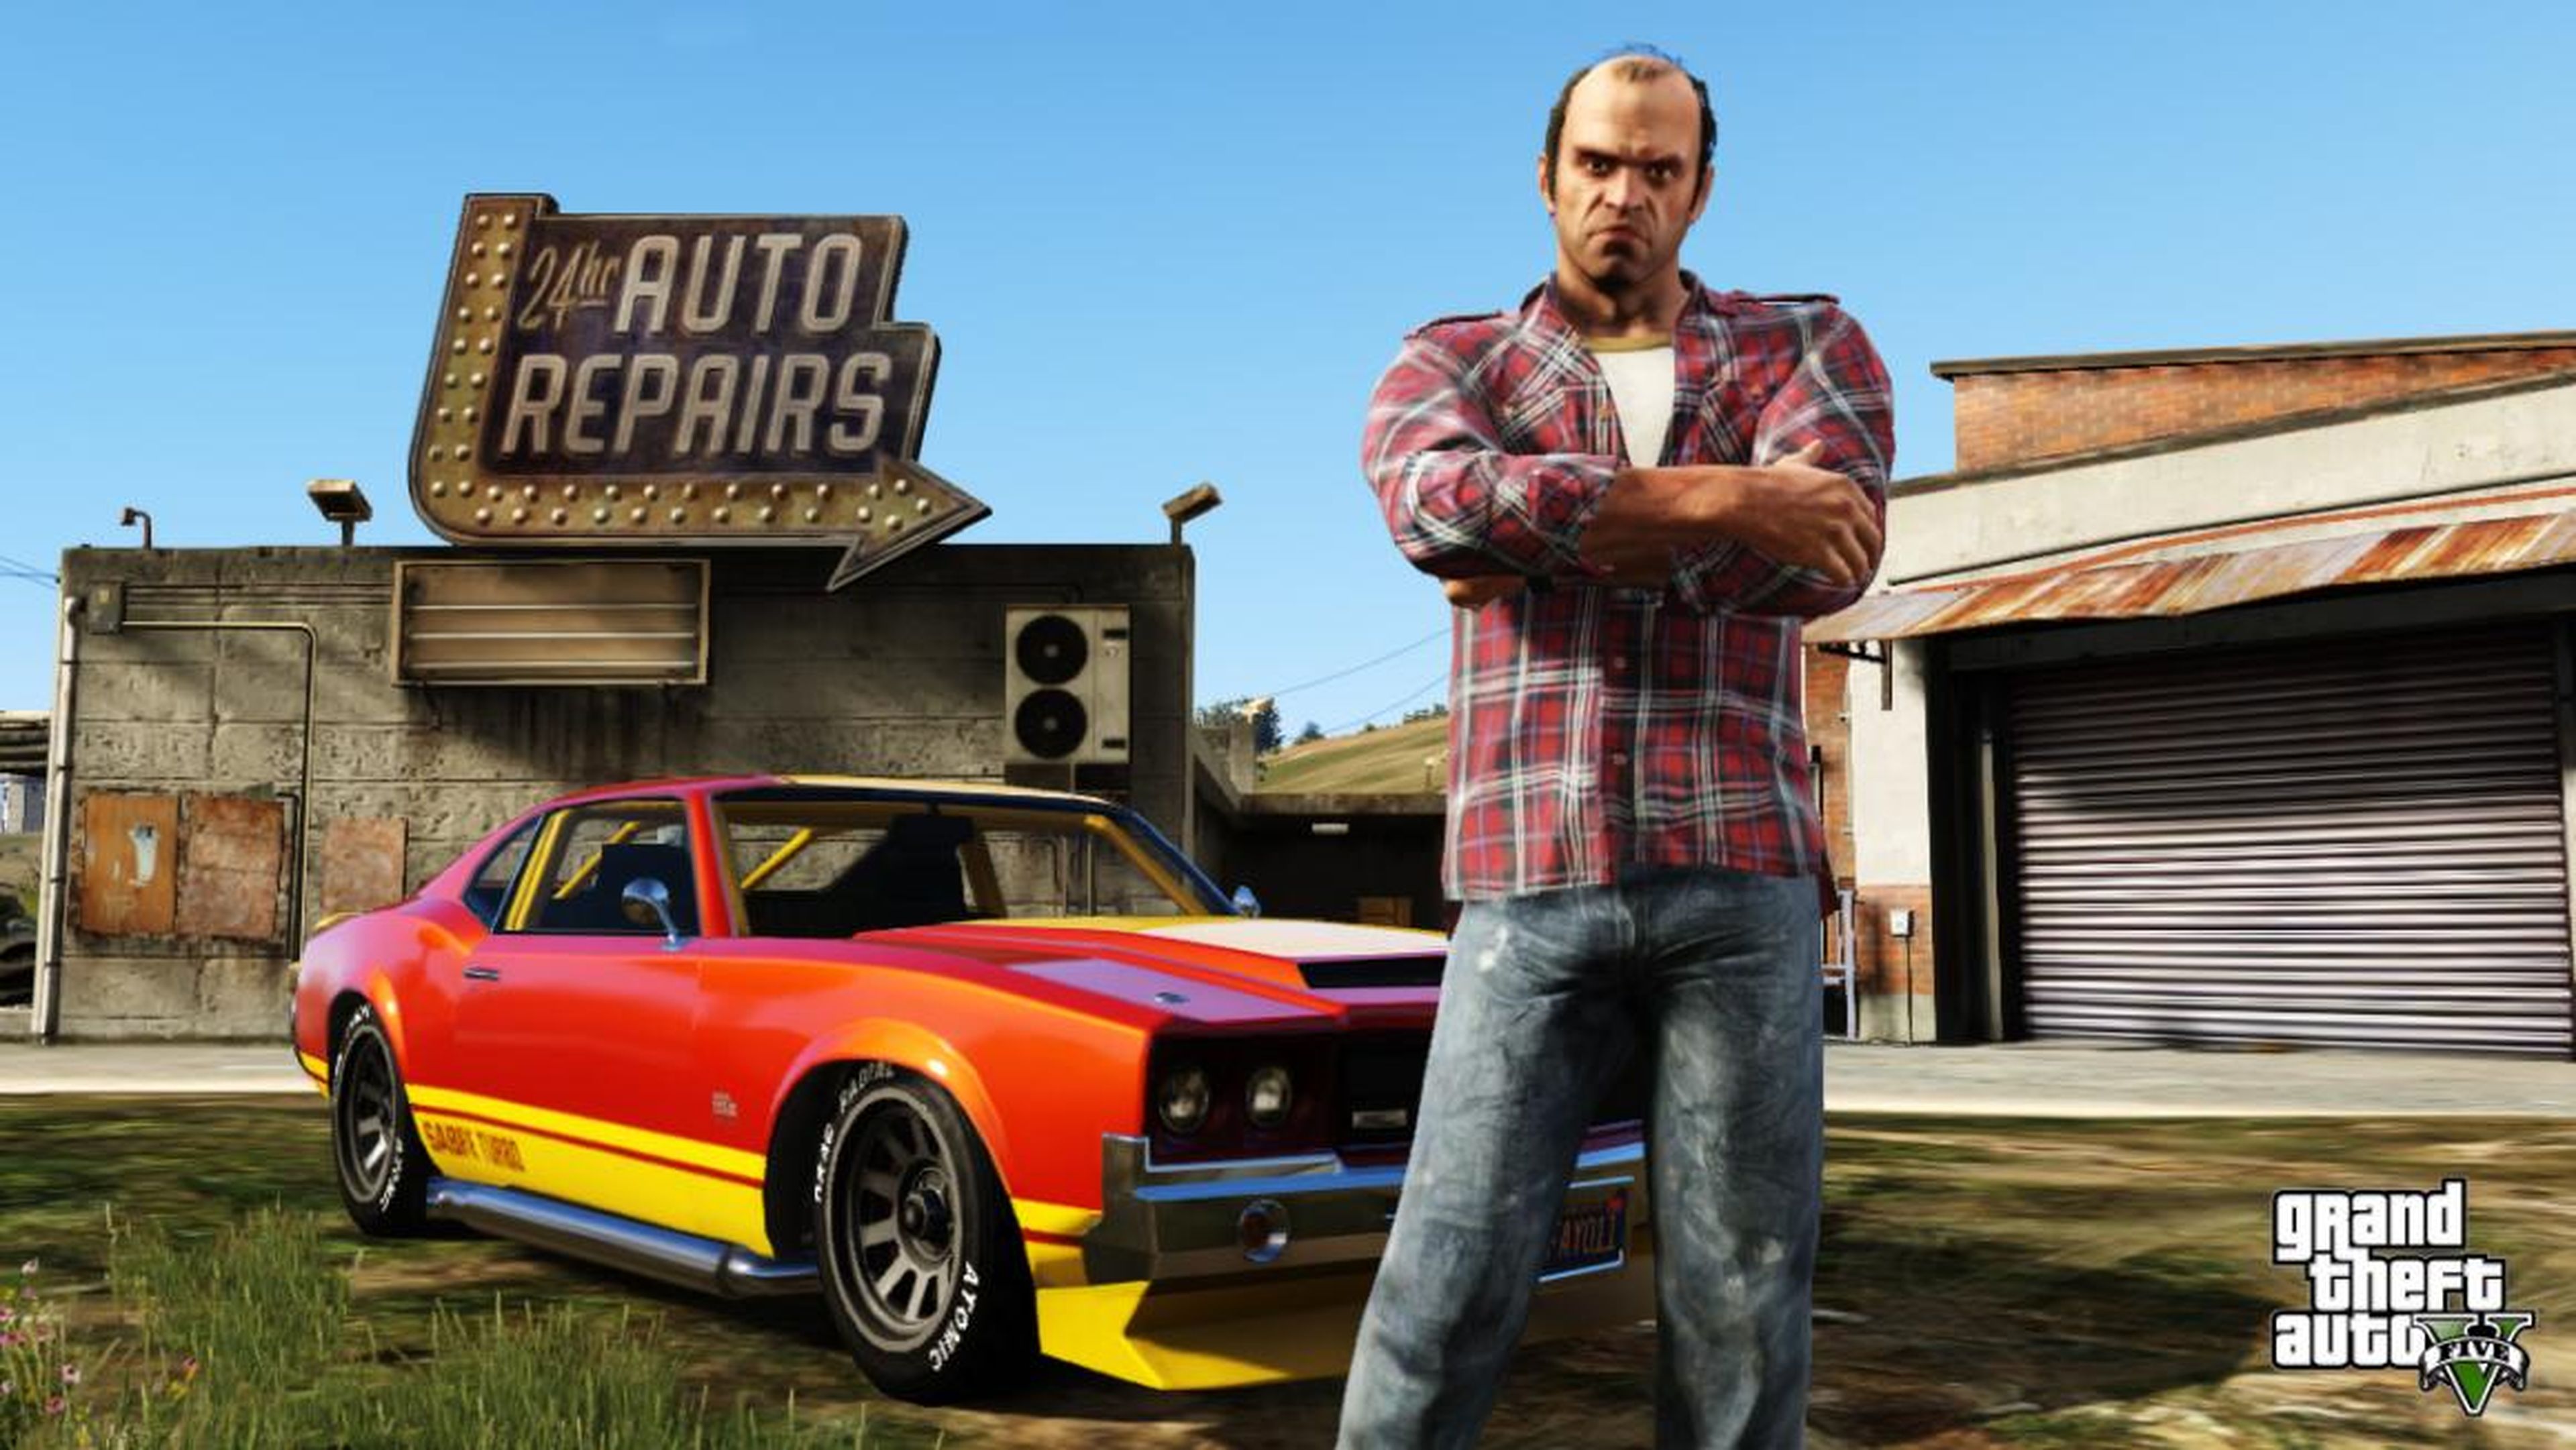 2013 — "Grand Theft Auto V" (Xbox 360, PlayStation 3)